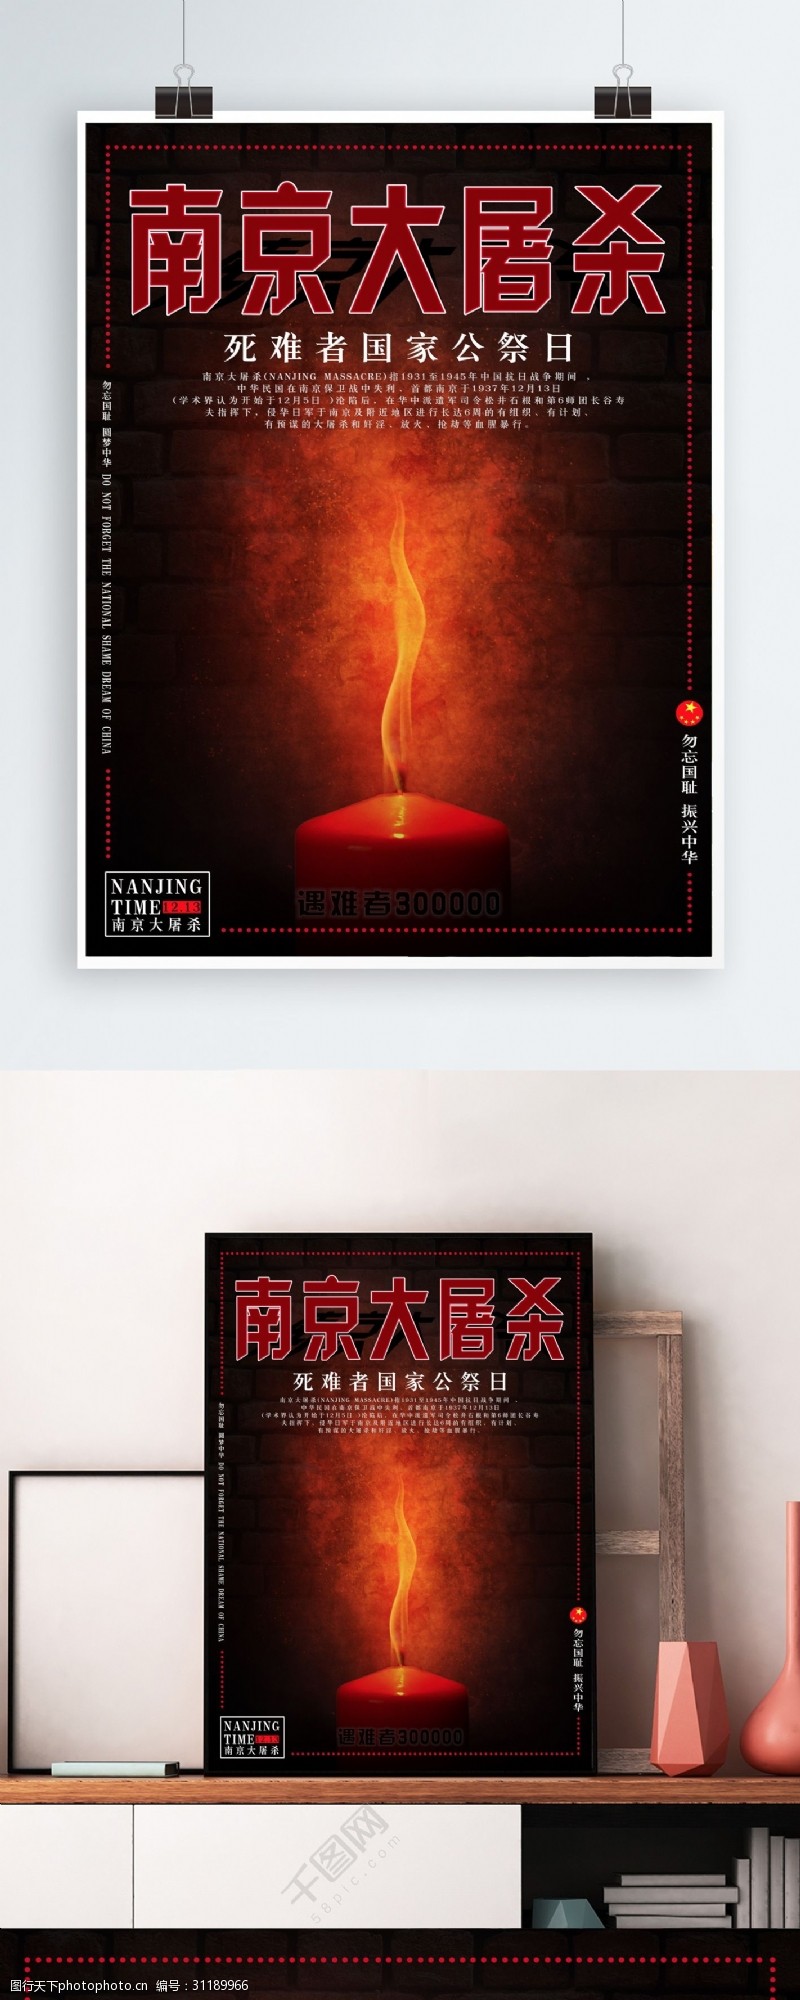 国家公祭日南京大屠杀纪念日海报